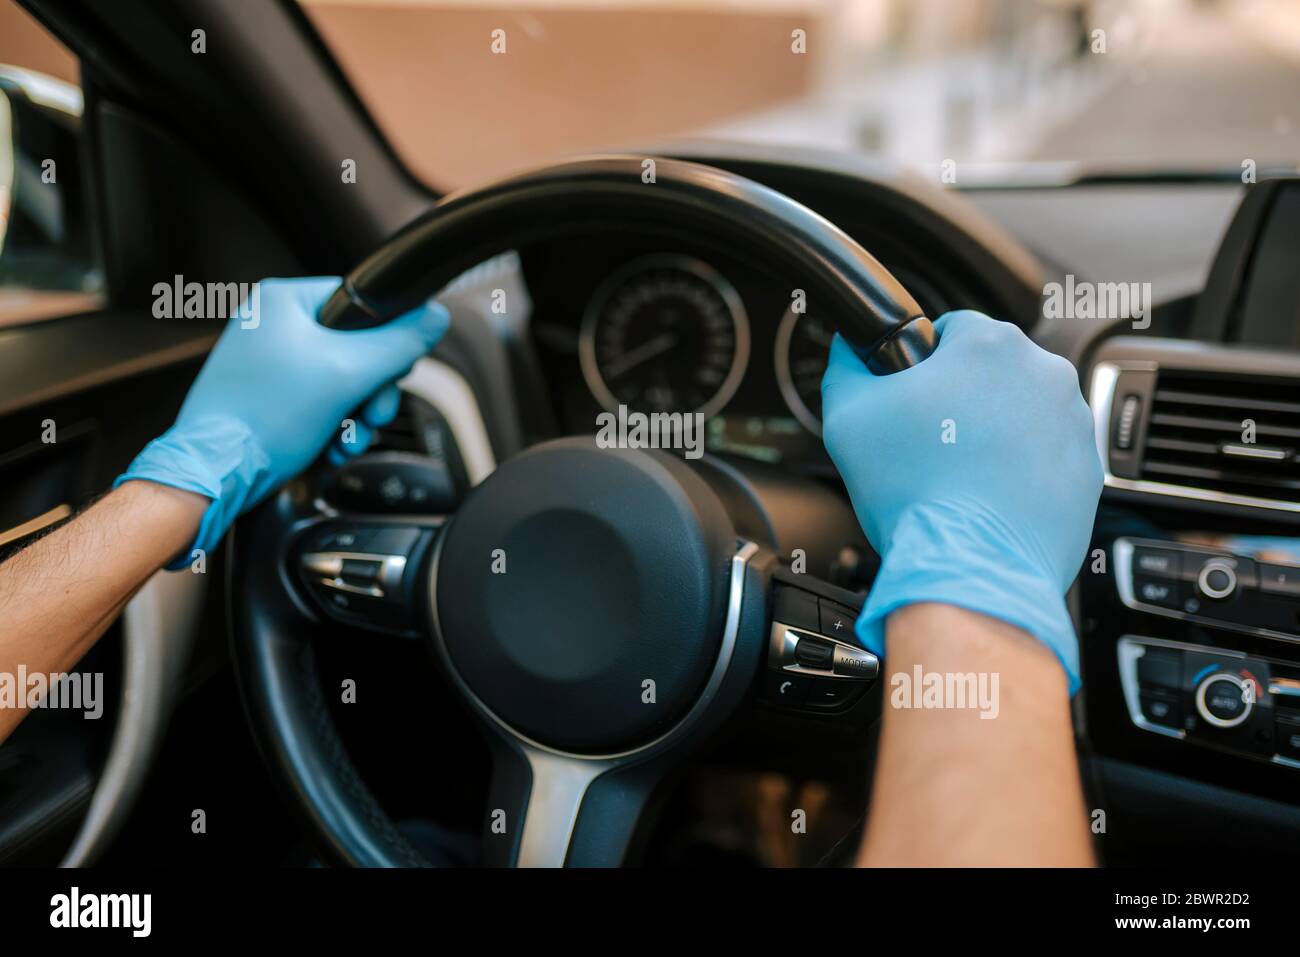 Ein Autofahrer legt während einer Epidemie eine medizinische Maske an, ein Taxifahrer in einer Maske, Schutz vor dem Virus. Fahrer im weißen Auto. Coronavirus, d Stockfoto